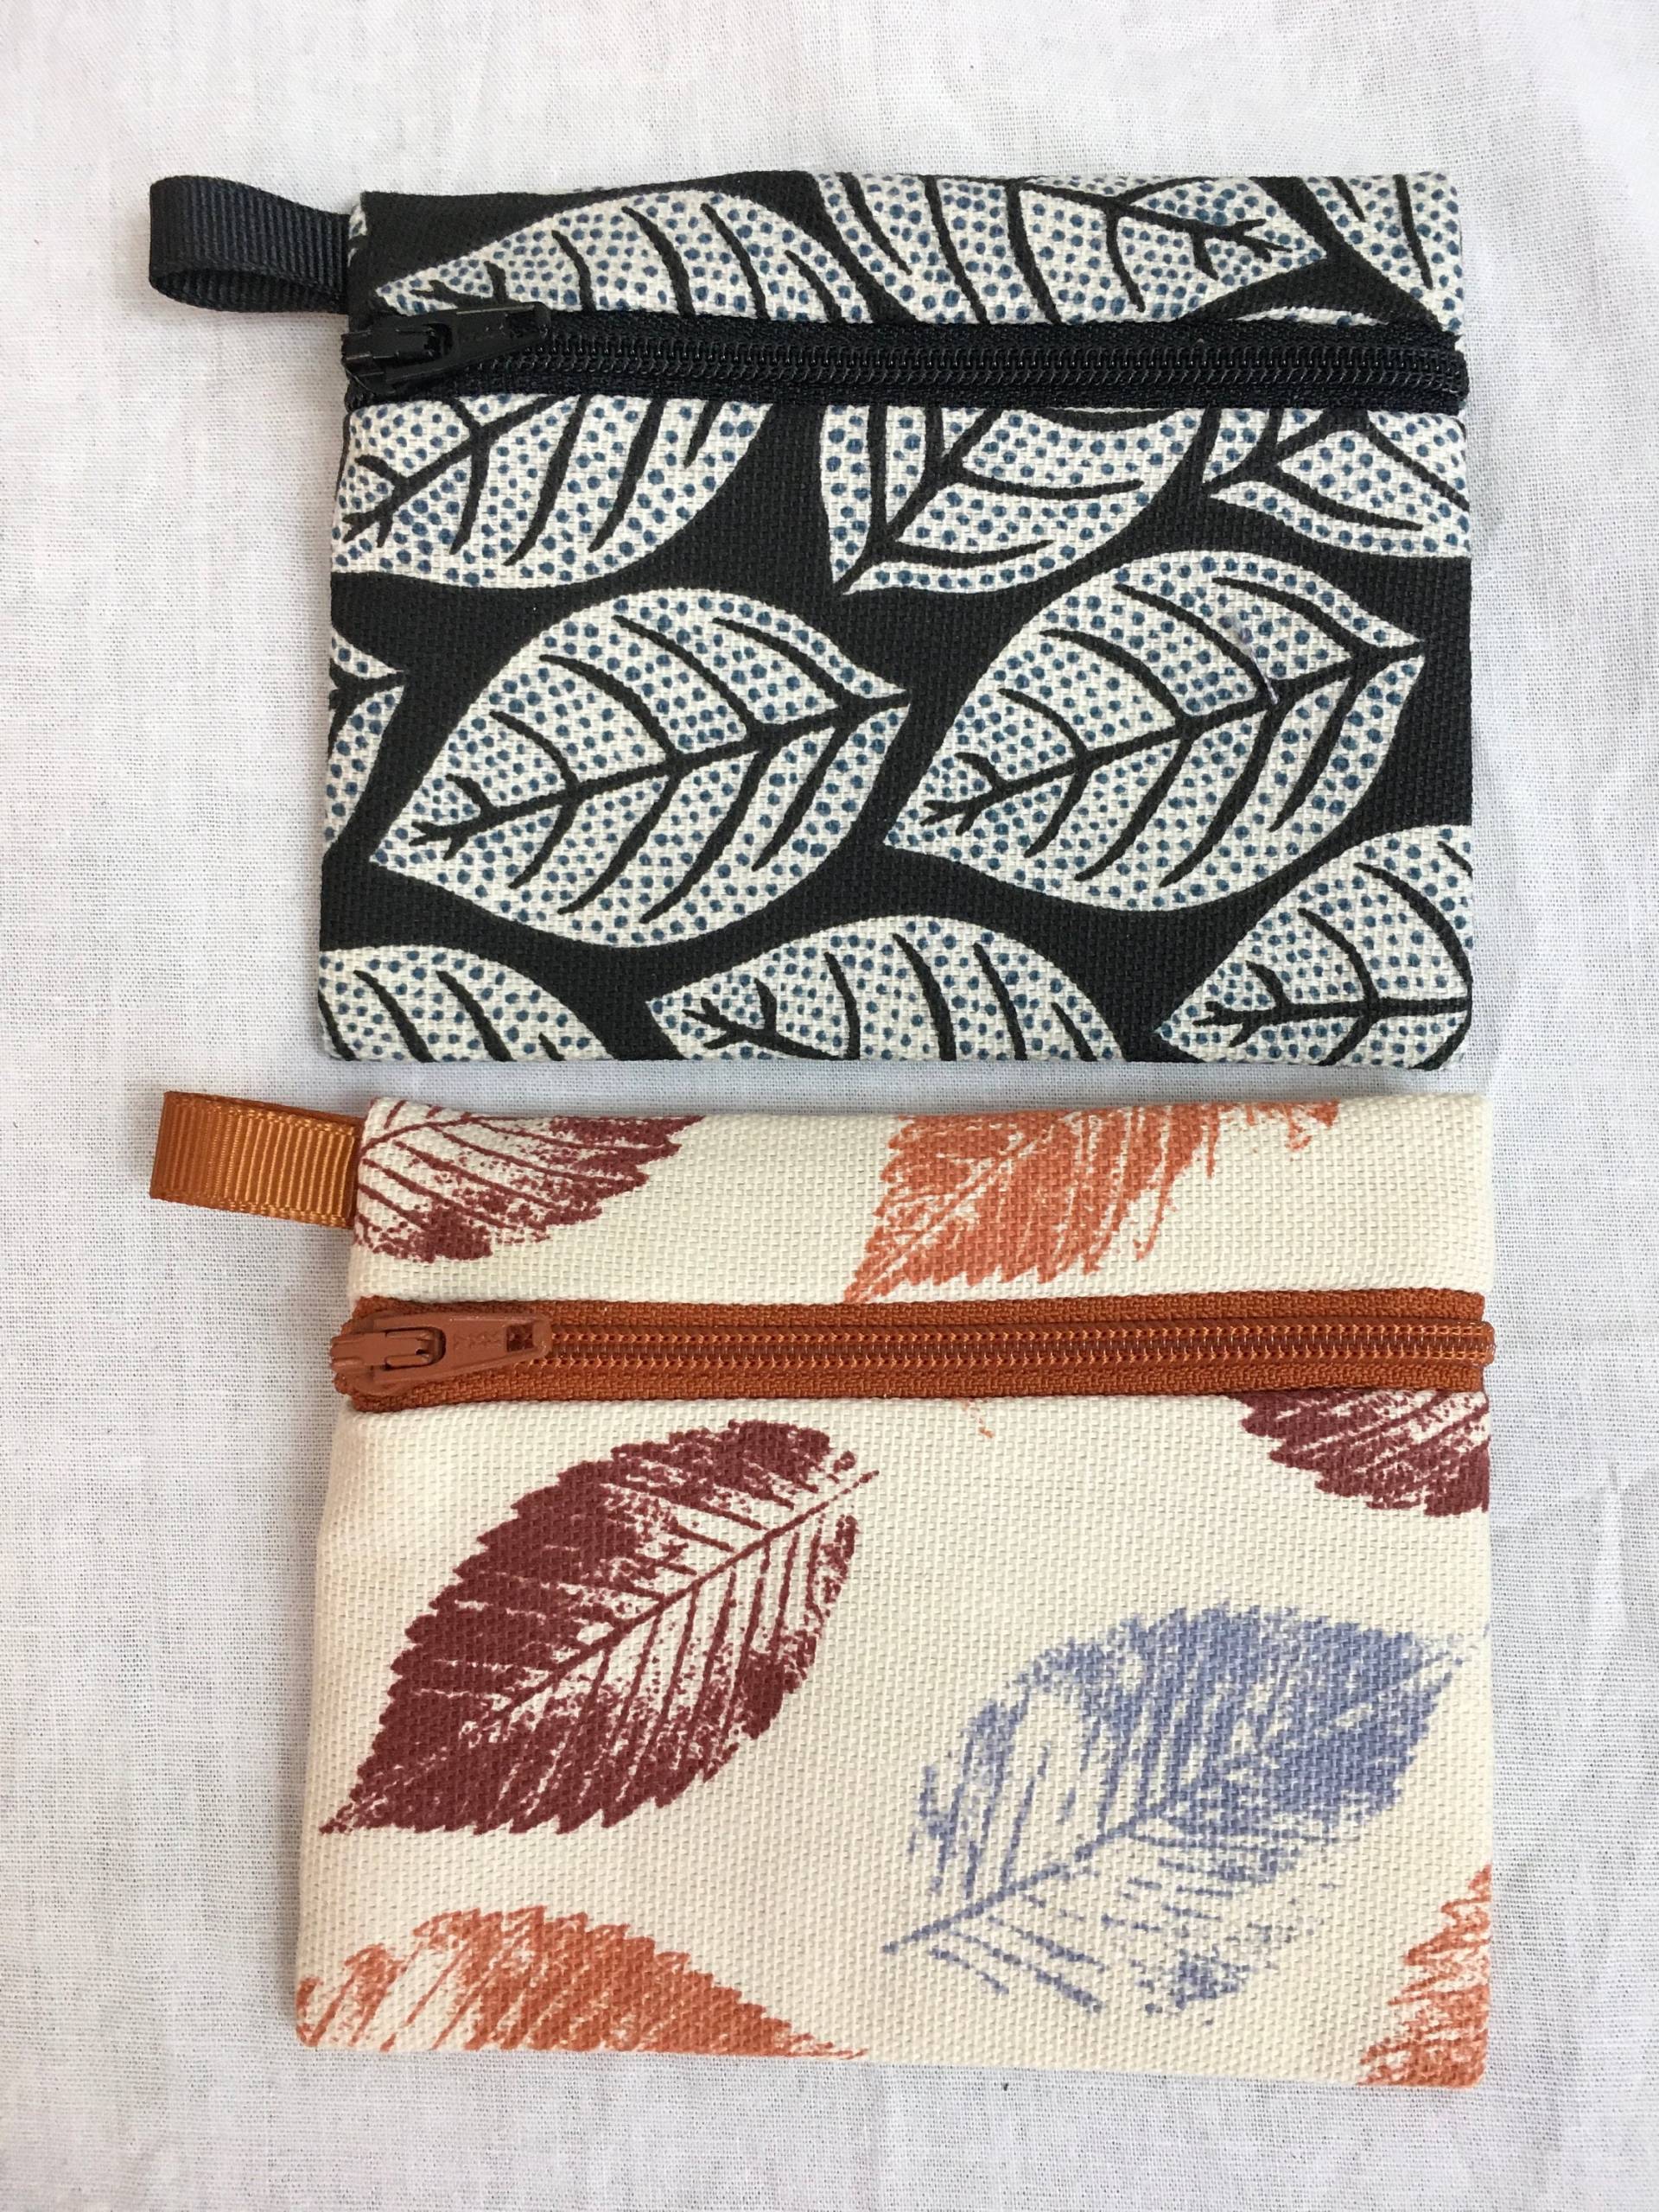 Blätter Flache Reißverschluss Geldbörse, Airpod Hülle, Ohrknochen, Accessoire Tasche von NancyPKdesigns